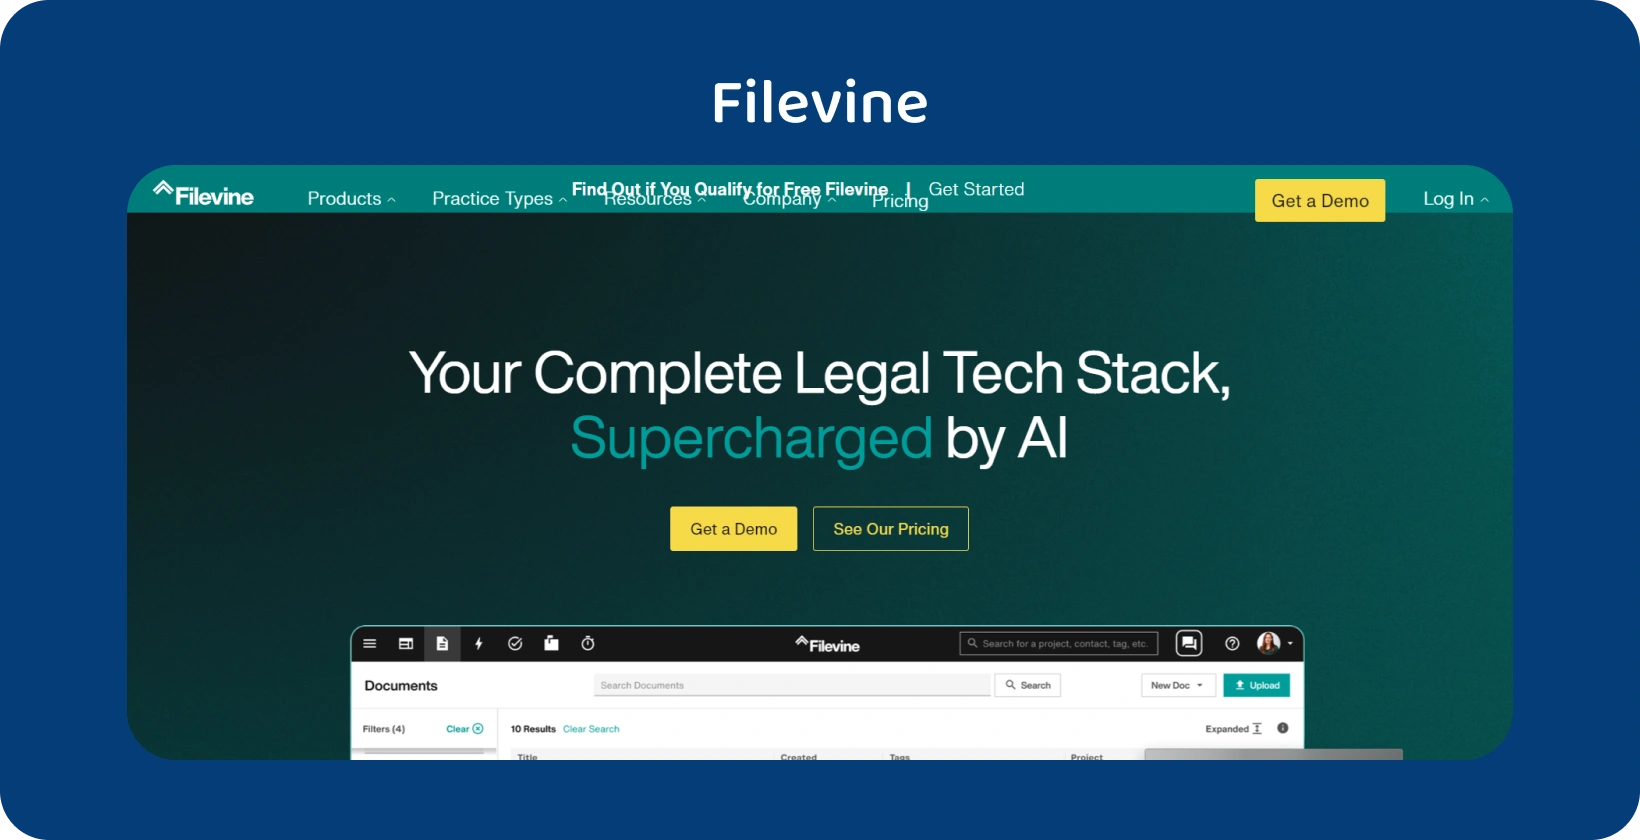 Otkrijte Filevine pravnu tehnologiju AI za superiorno upravljanje zapisima, povećanje efikasnosti i organizacije.